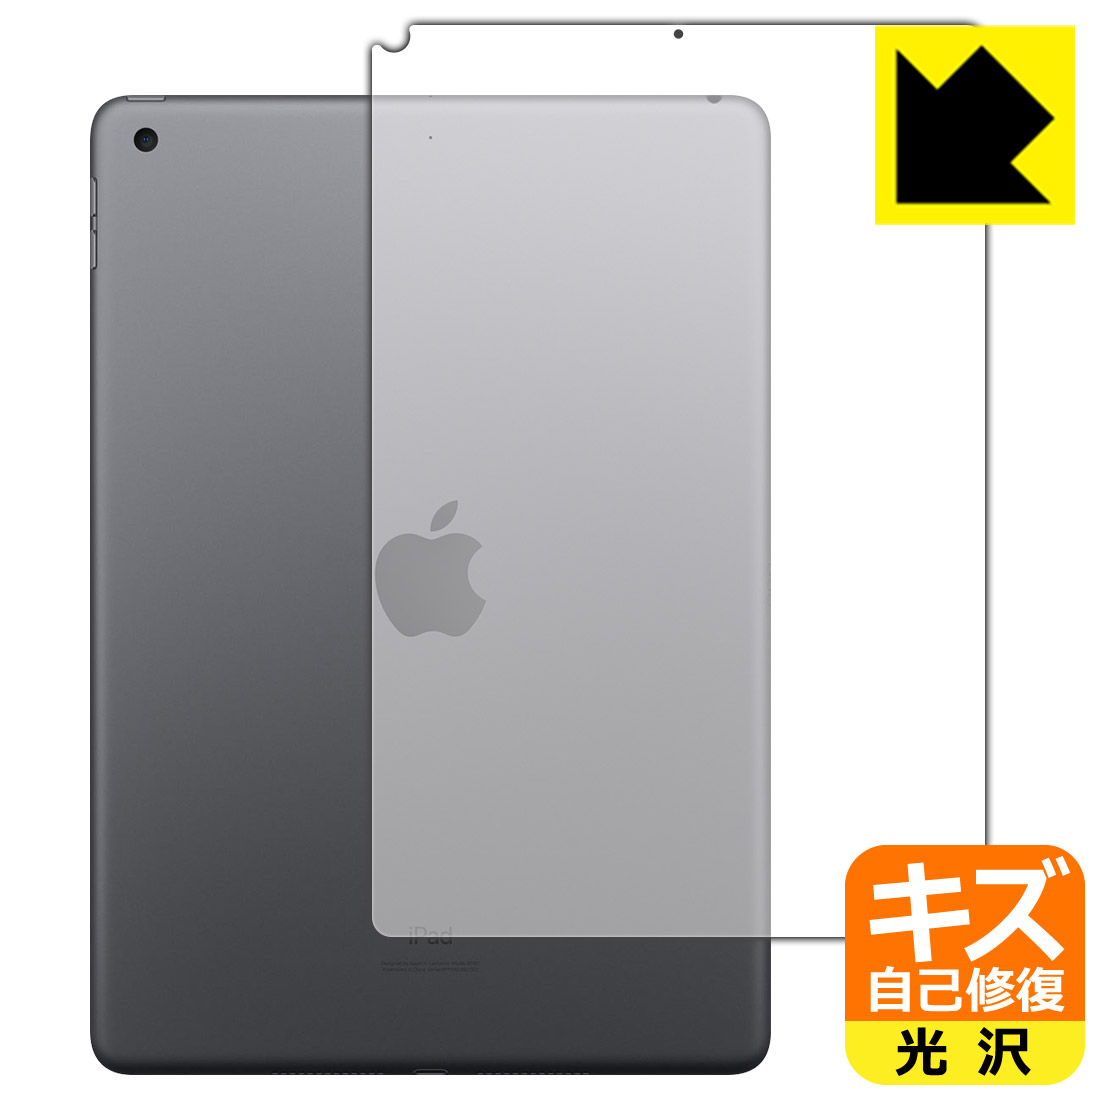 キズ自己修復保護フィルム iPad (第8世代・2020年発売モデル) 背面のみ 【Wi-Fiモデル】 日本製 自社製造直販